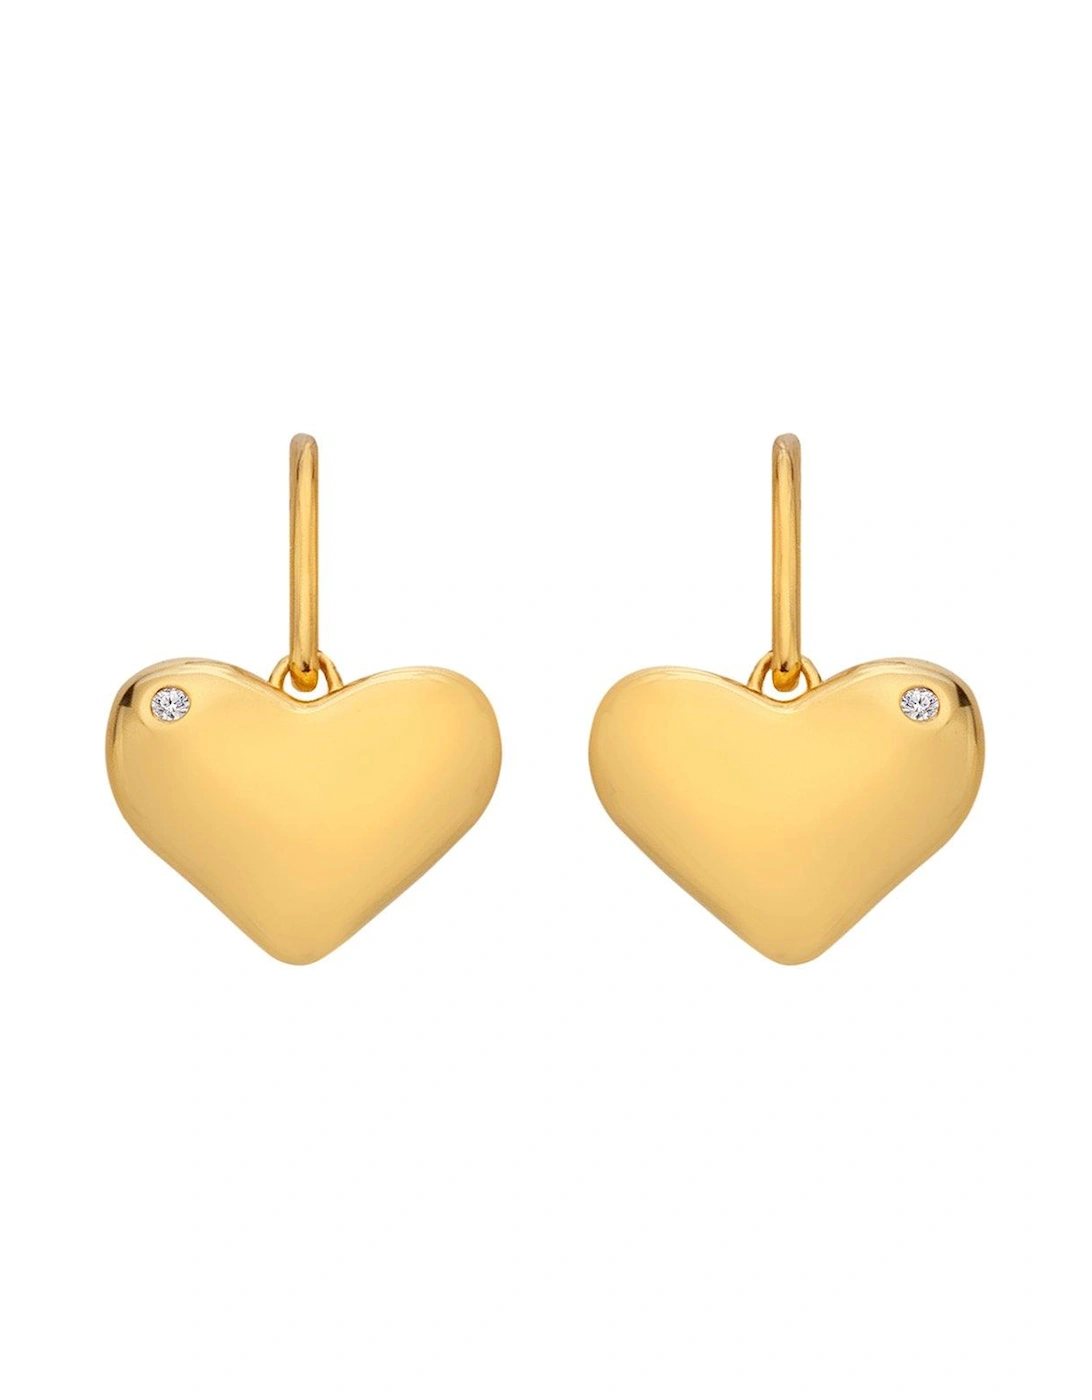 HD X JJ Desire Hook Earrings - Gold Plated, 2 of 1